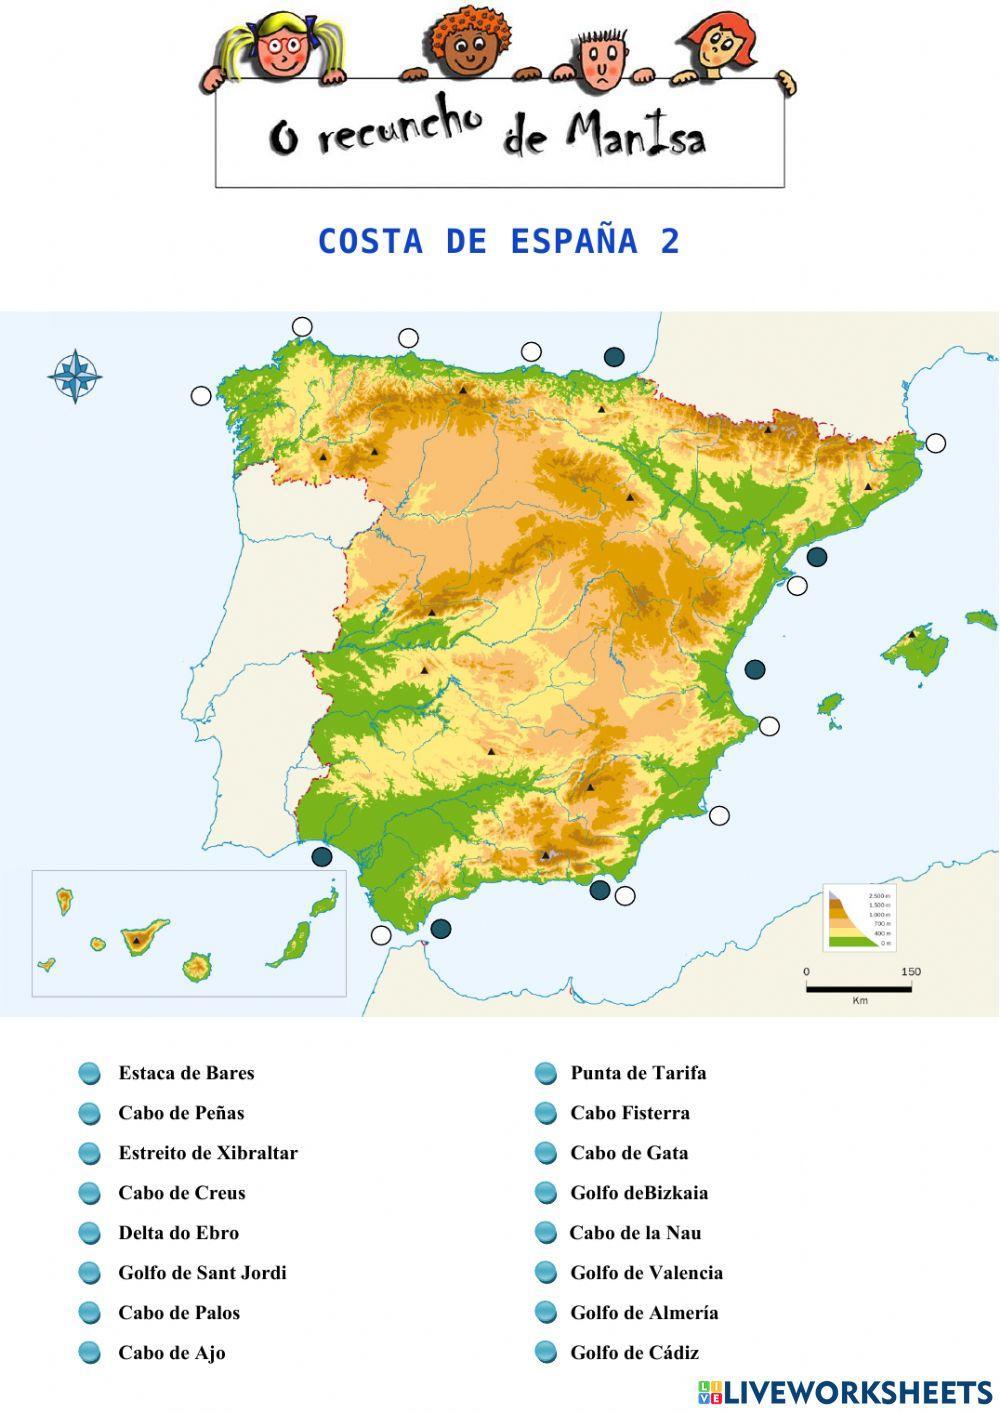 As costas de España 2